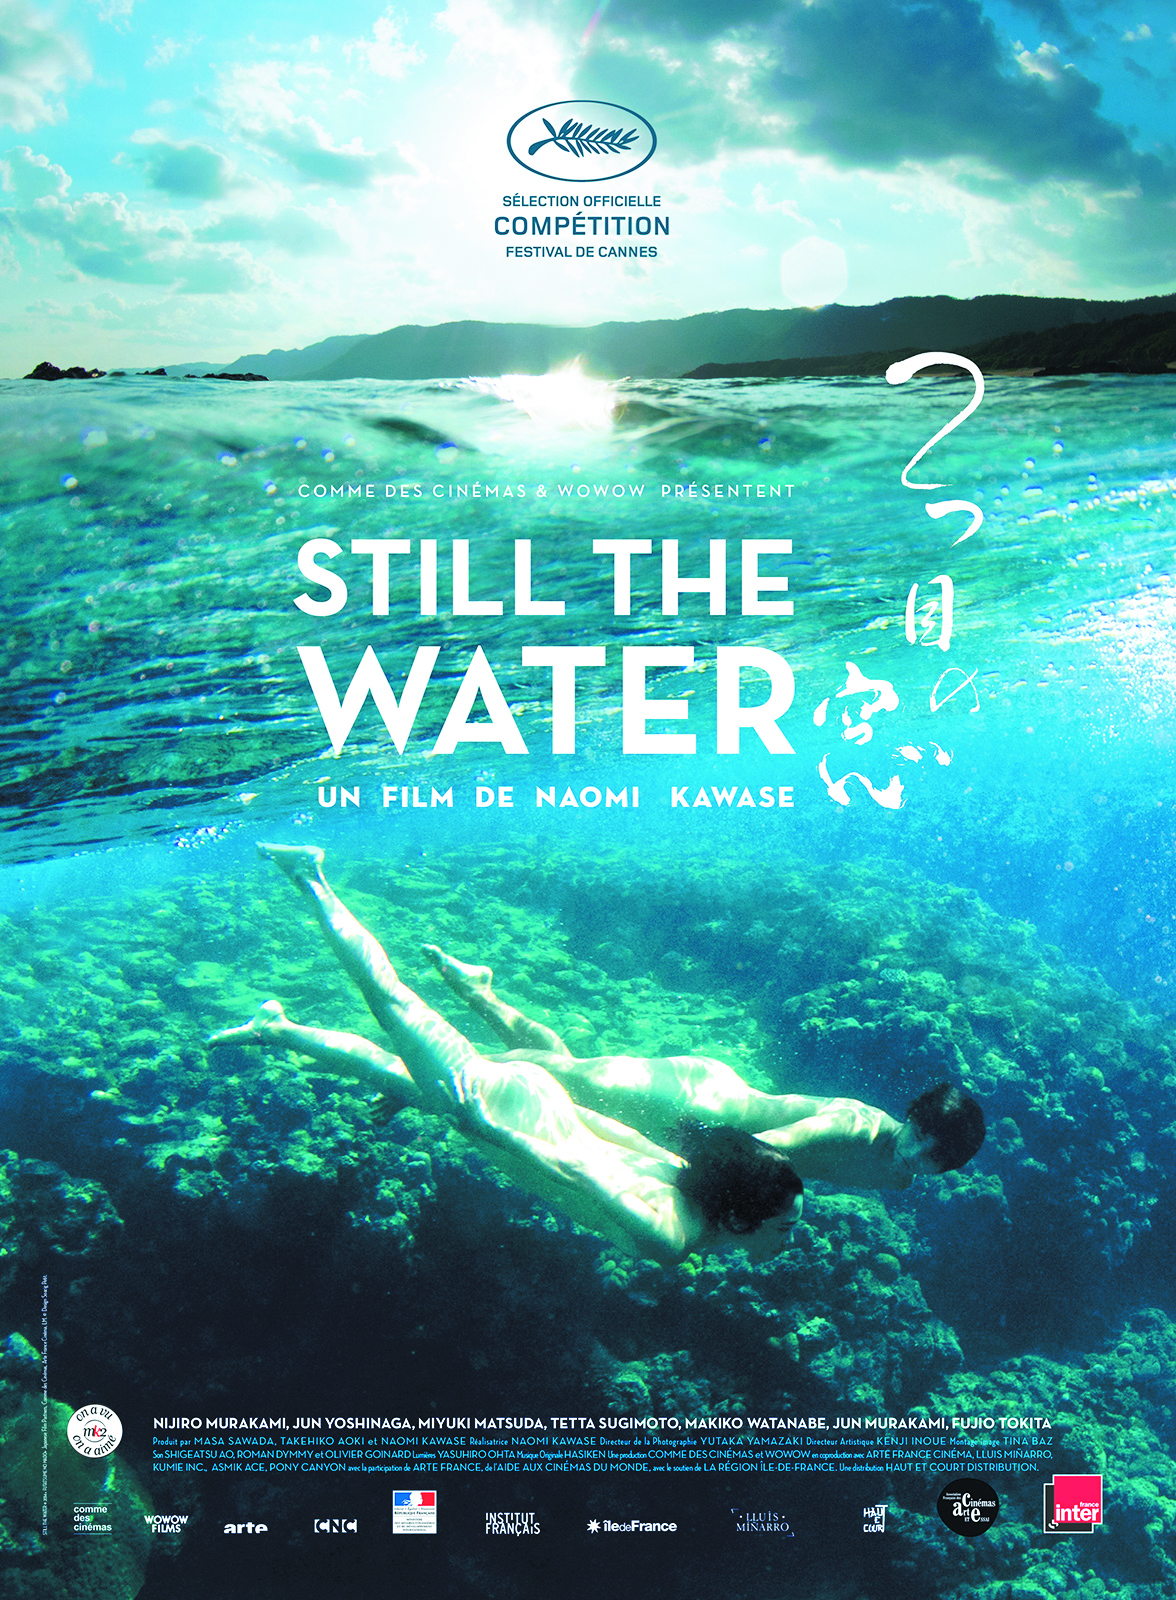 Projection du film "Still the water"de Naomi Kawase, Jeudi 20 juin à 20h30 à la Cinémathèque de Corse.